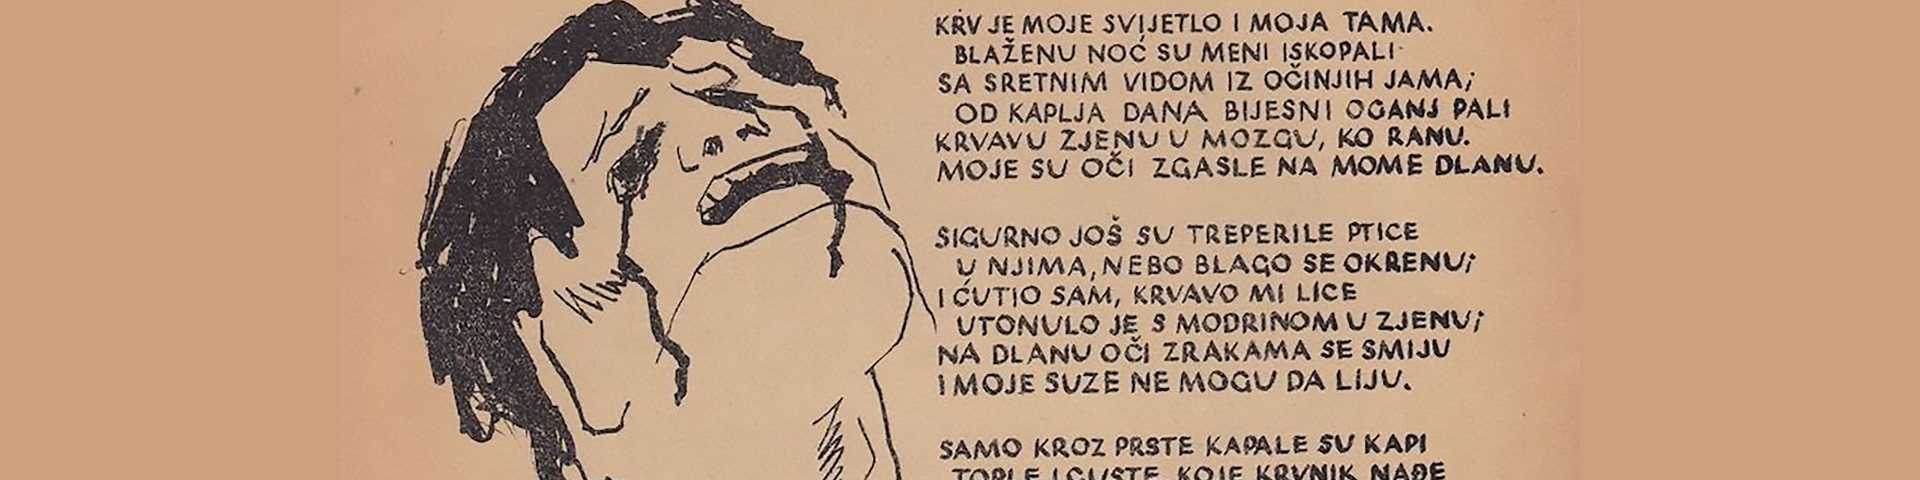 80 година од настанка поеме „Јама“: Све смрти Ивана Горана Ковачића